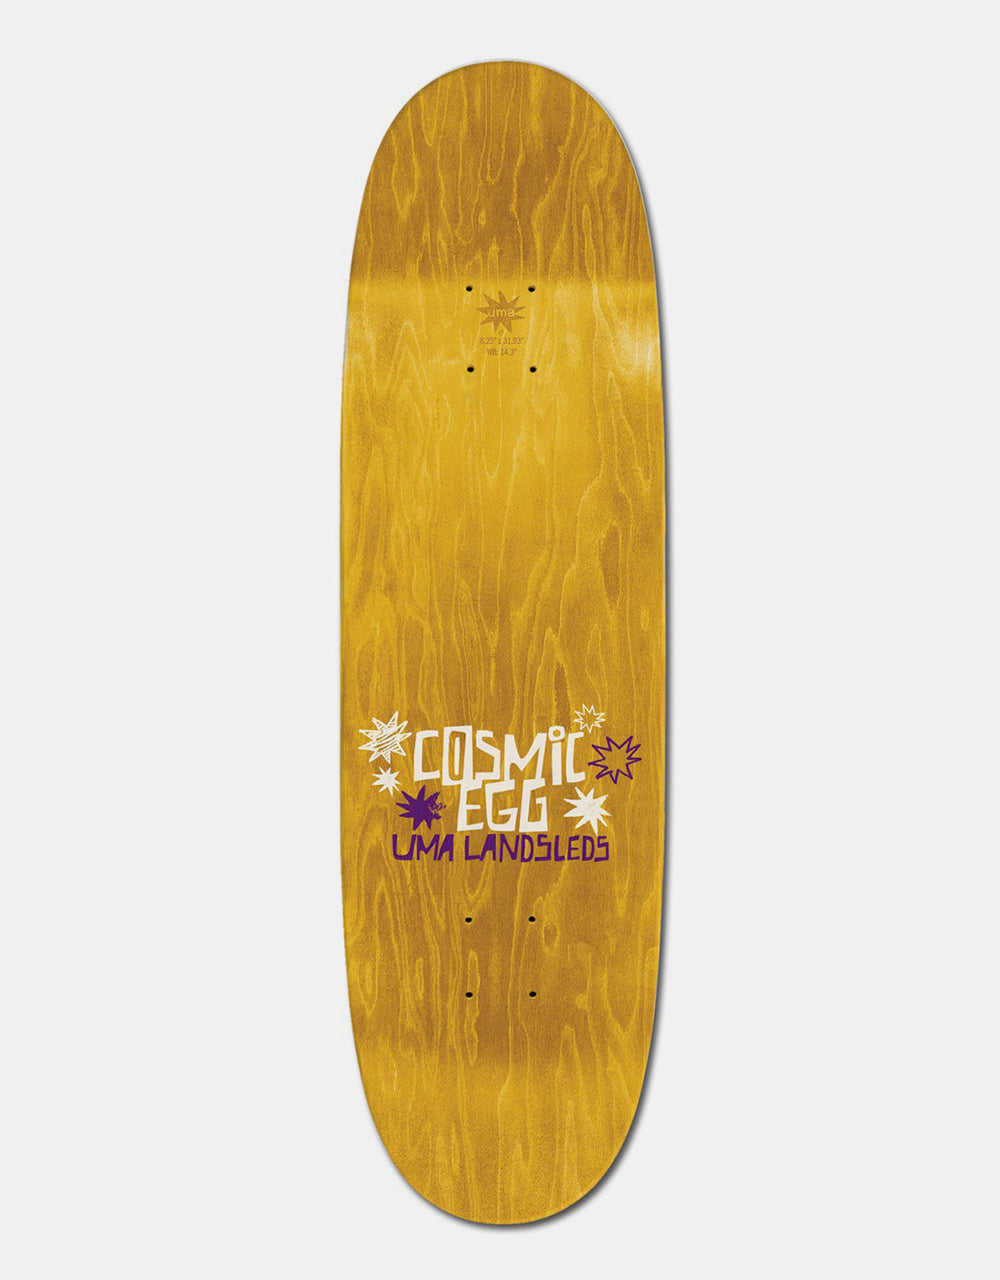 UMA Landsleds Cosmic Egg Skateboard Deck - 9"